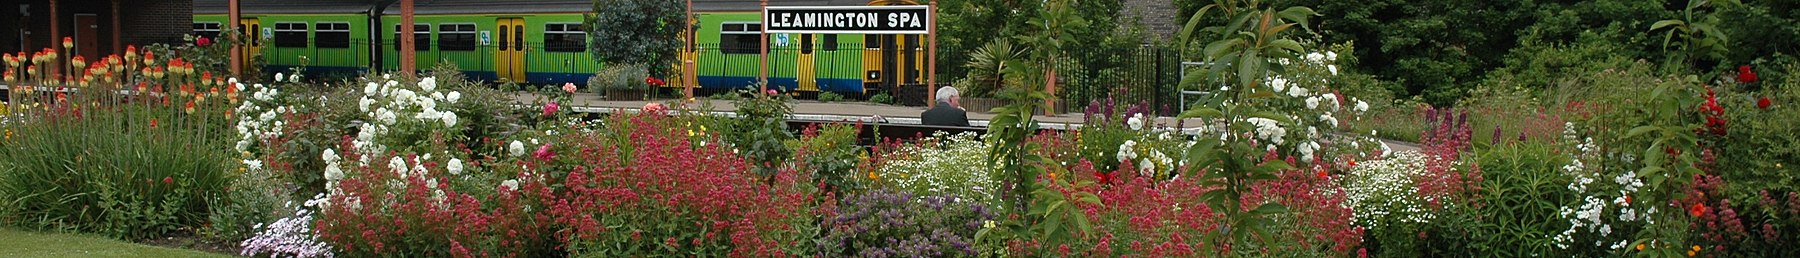 Spanduk Leamington Spa Station Garden.JPG